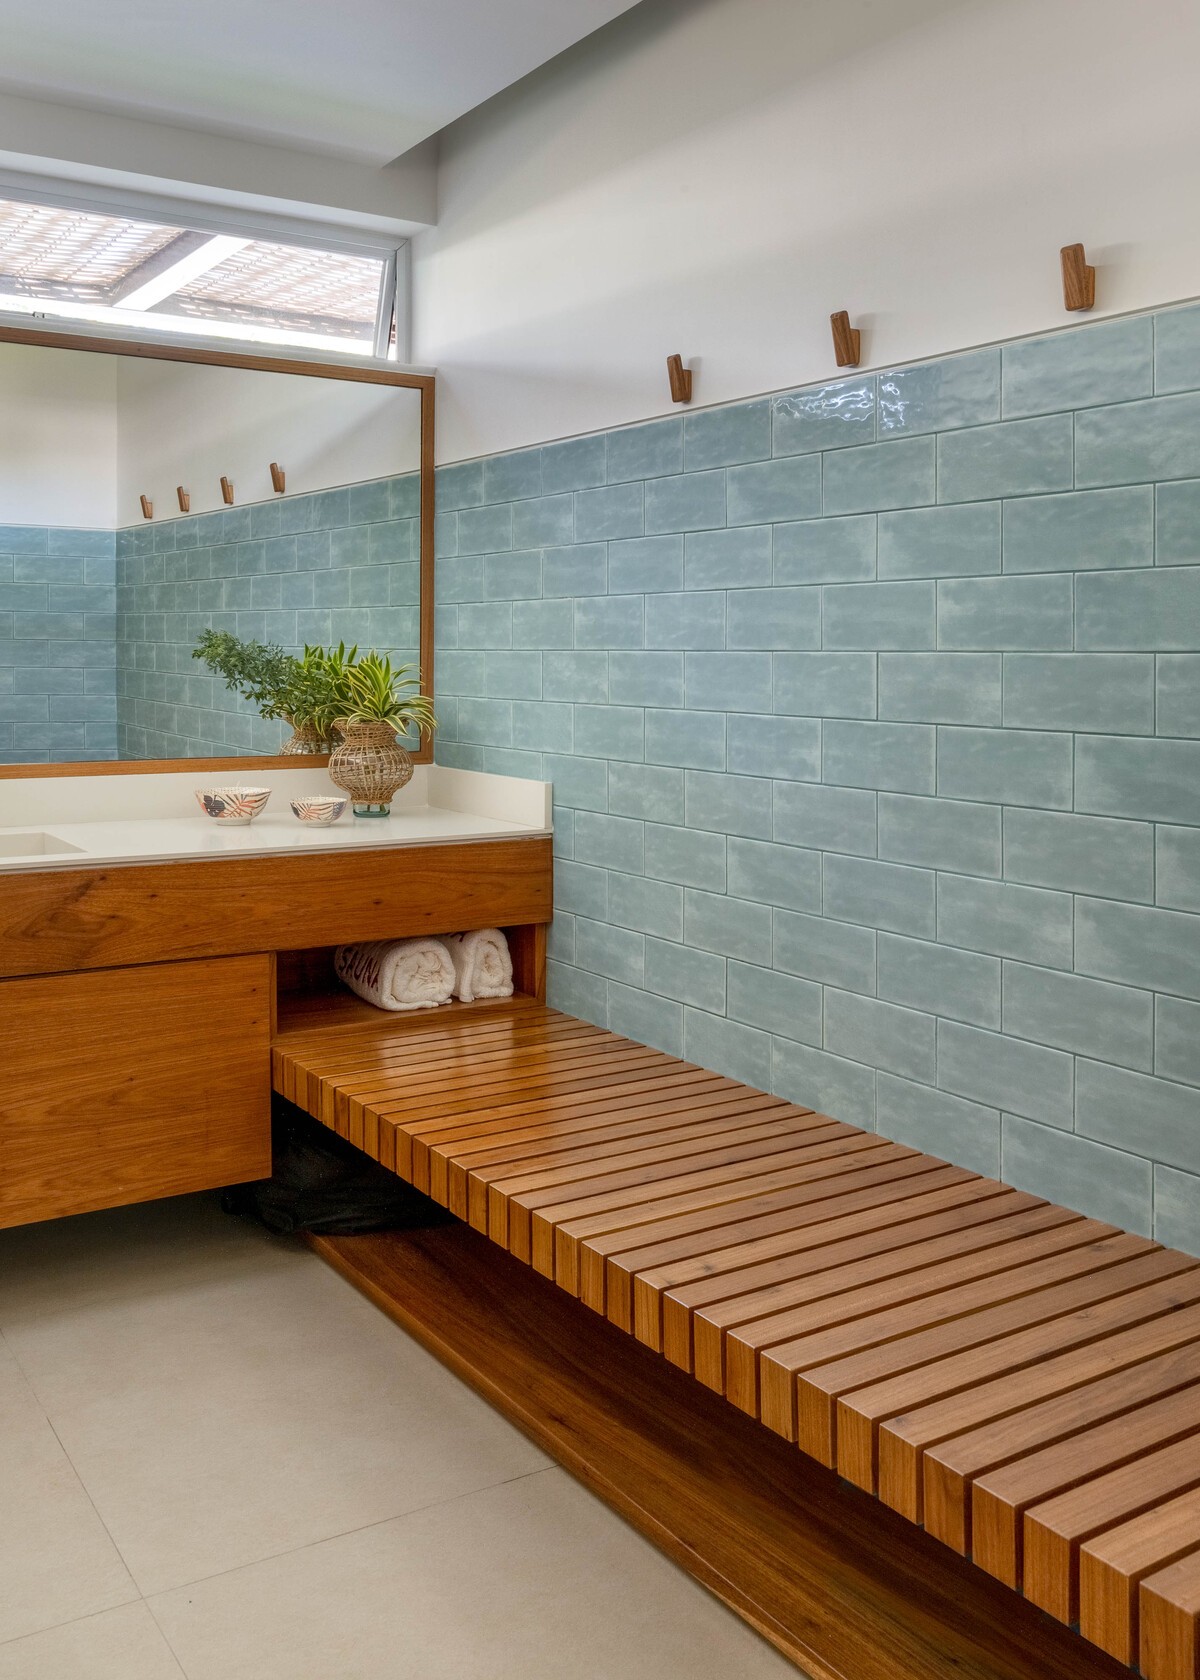 SAUNA | O vestiário permite acomodar os pertences dos moradores para que possam utilizar a sauna com tranquilidade (Foto: André Nazareth / Divulgação)